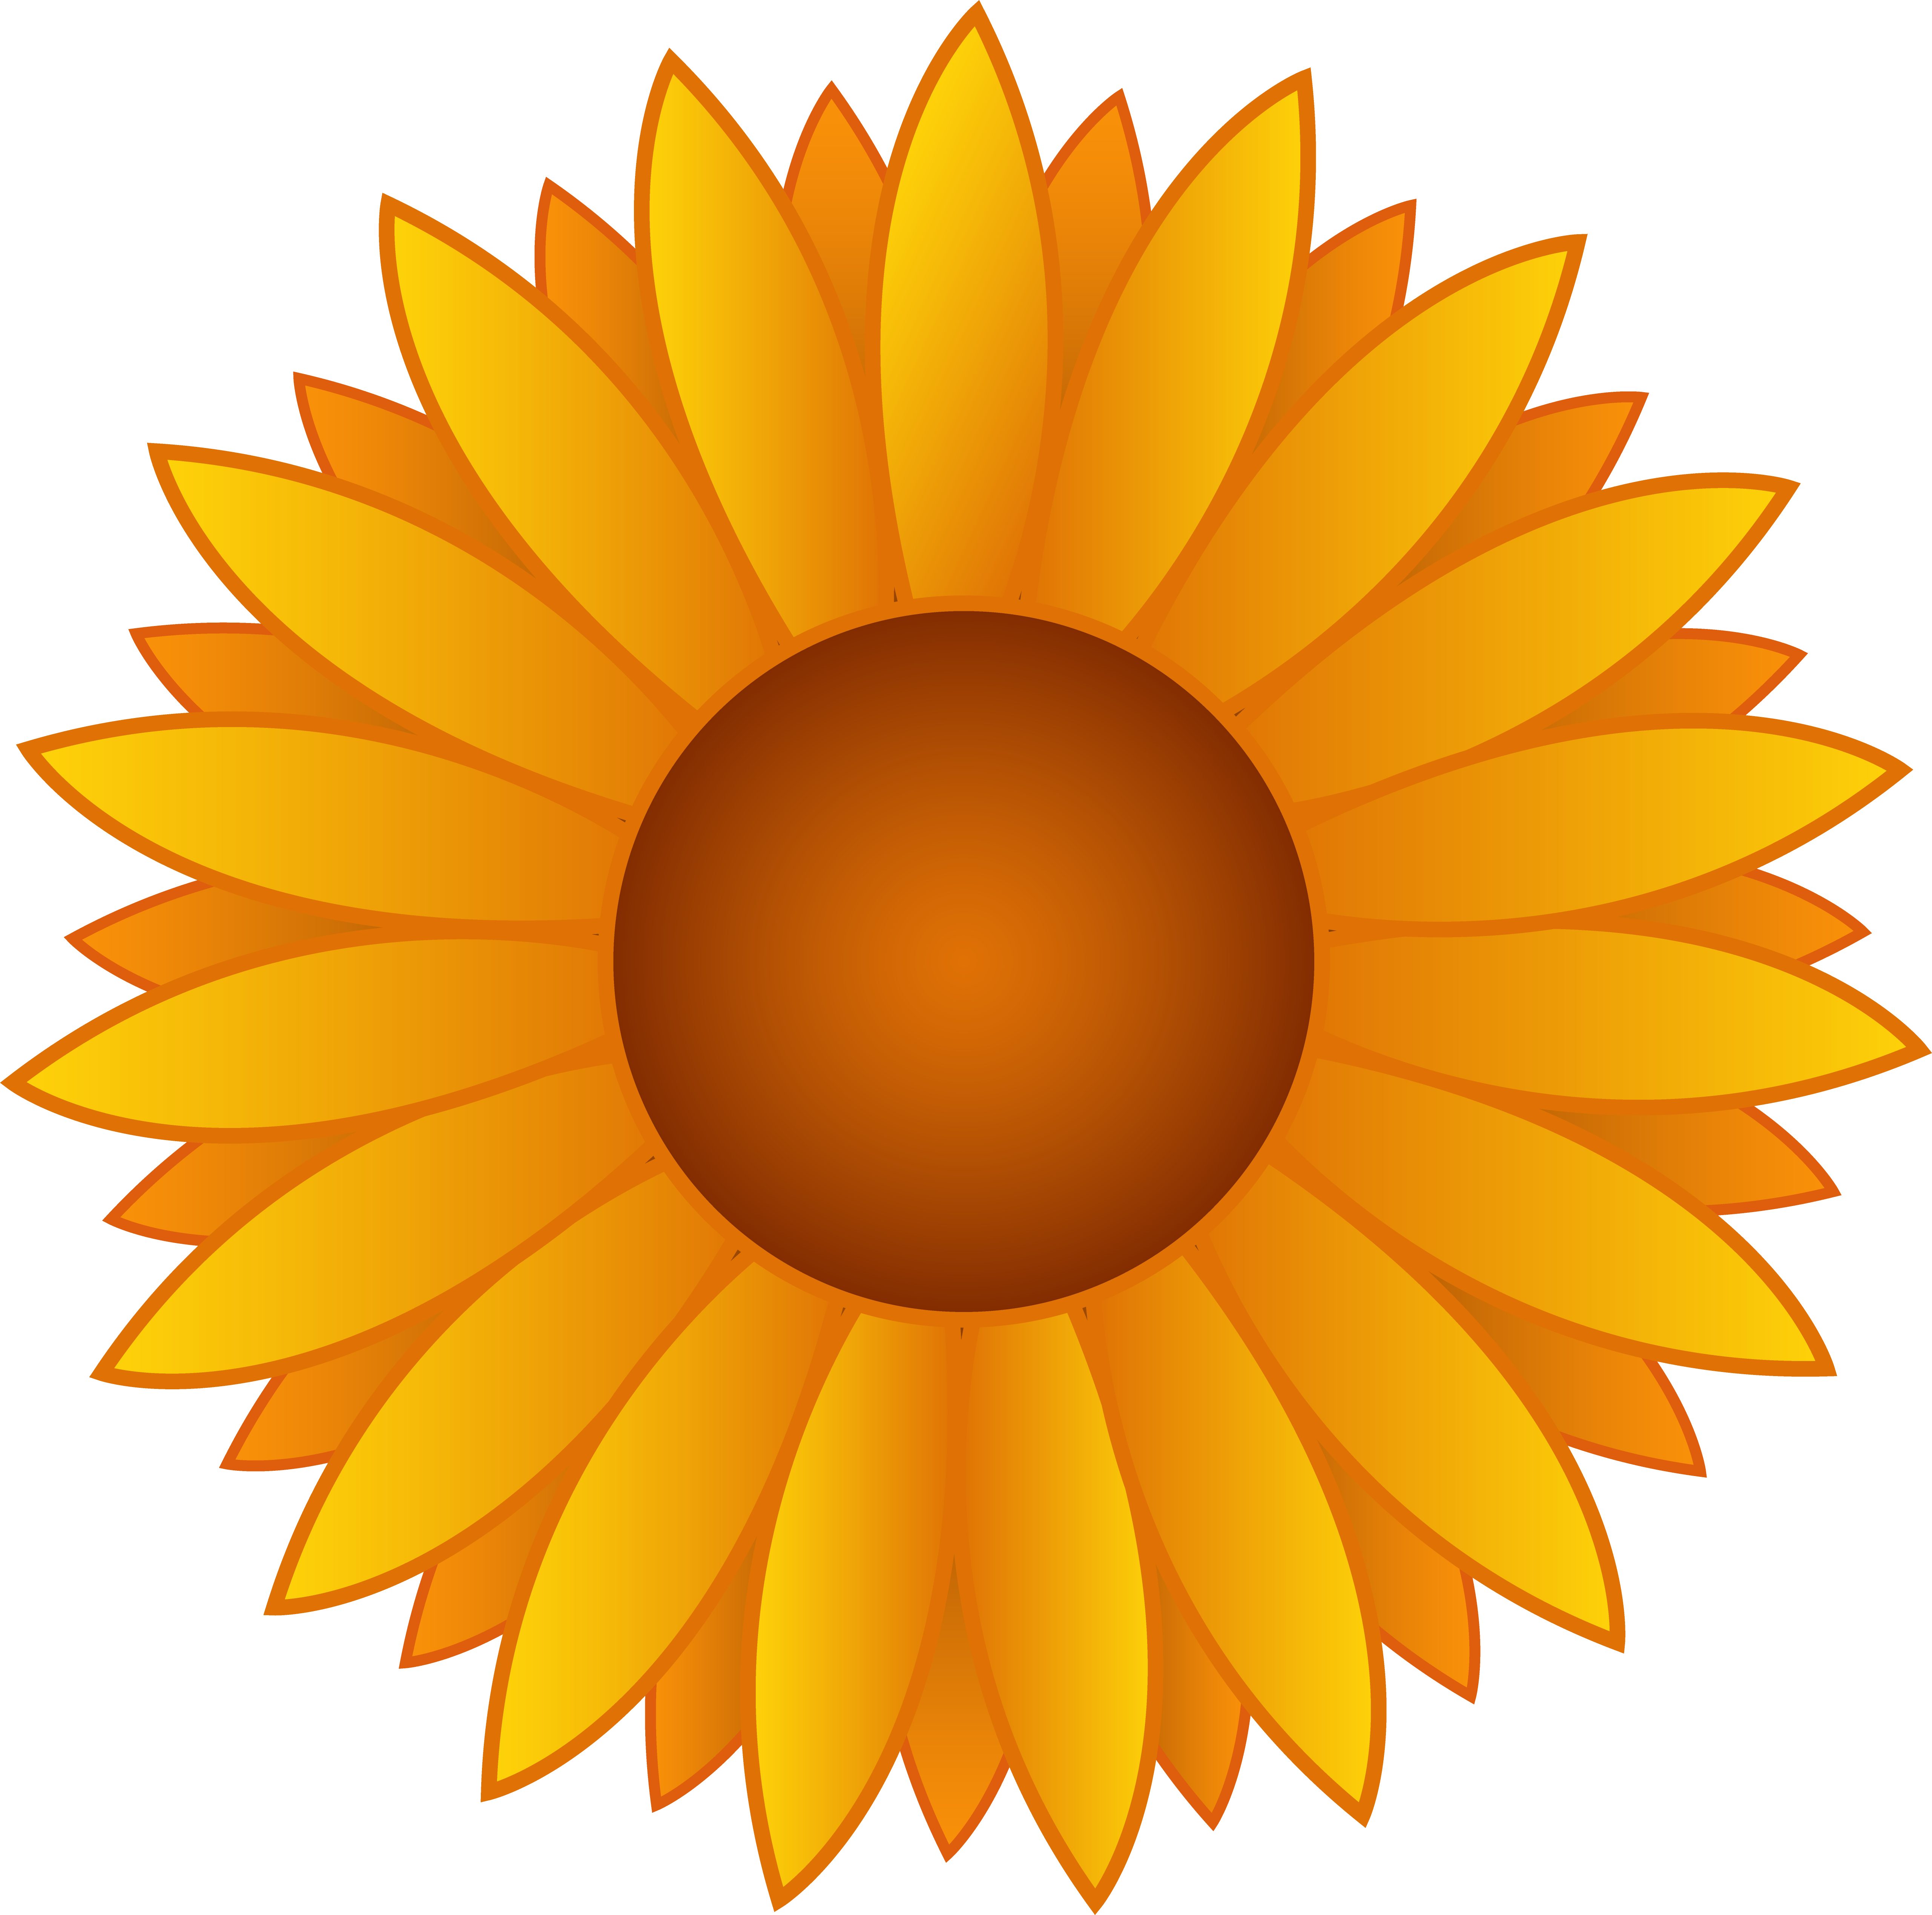 Yellow Sunflower Vector Art - Free Clip Art